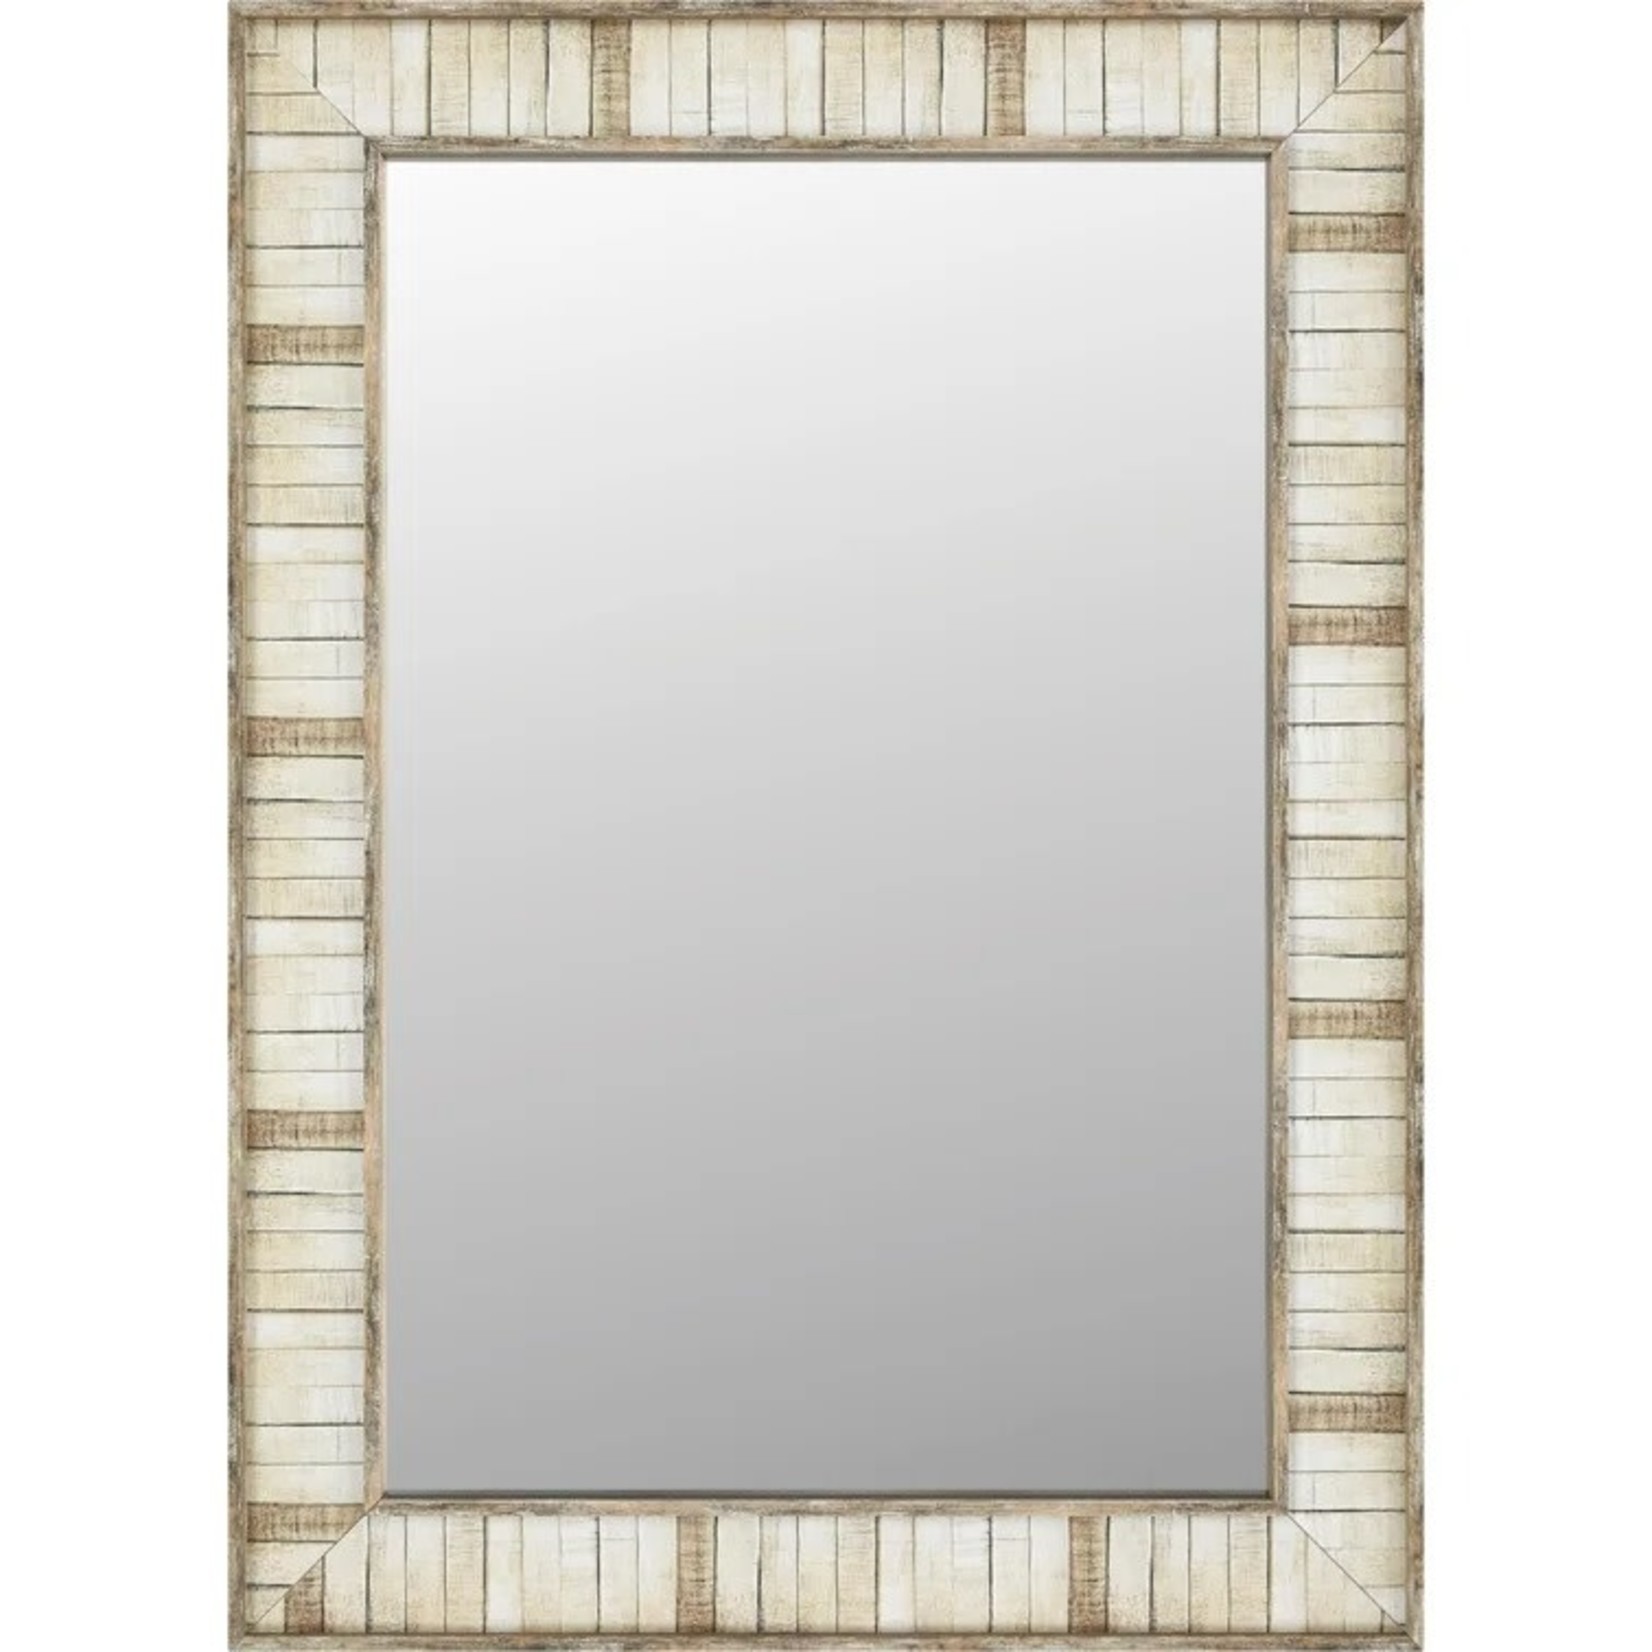 *24 In W. X 36 In H. Framed Bathroom Vanity Mirror In Cream Block Wood